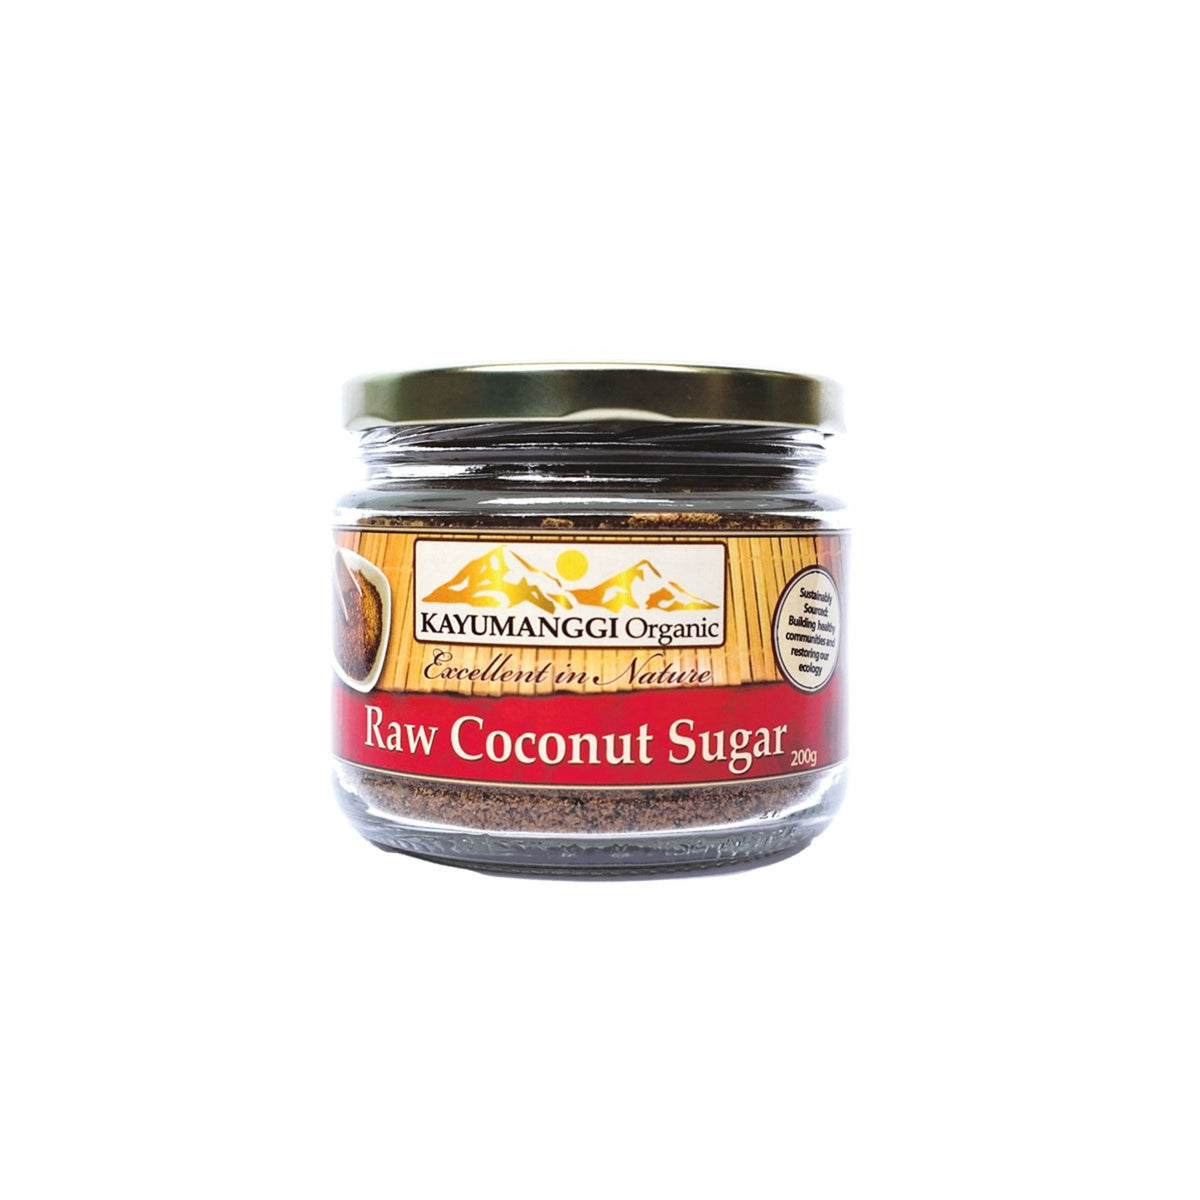 Raw Coconut Sugar